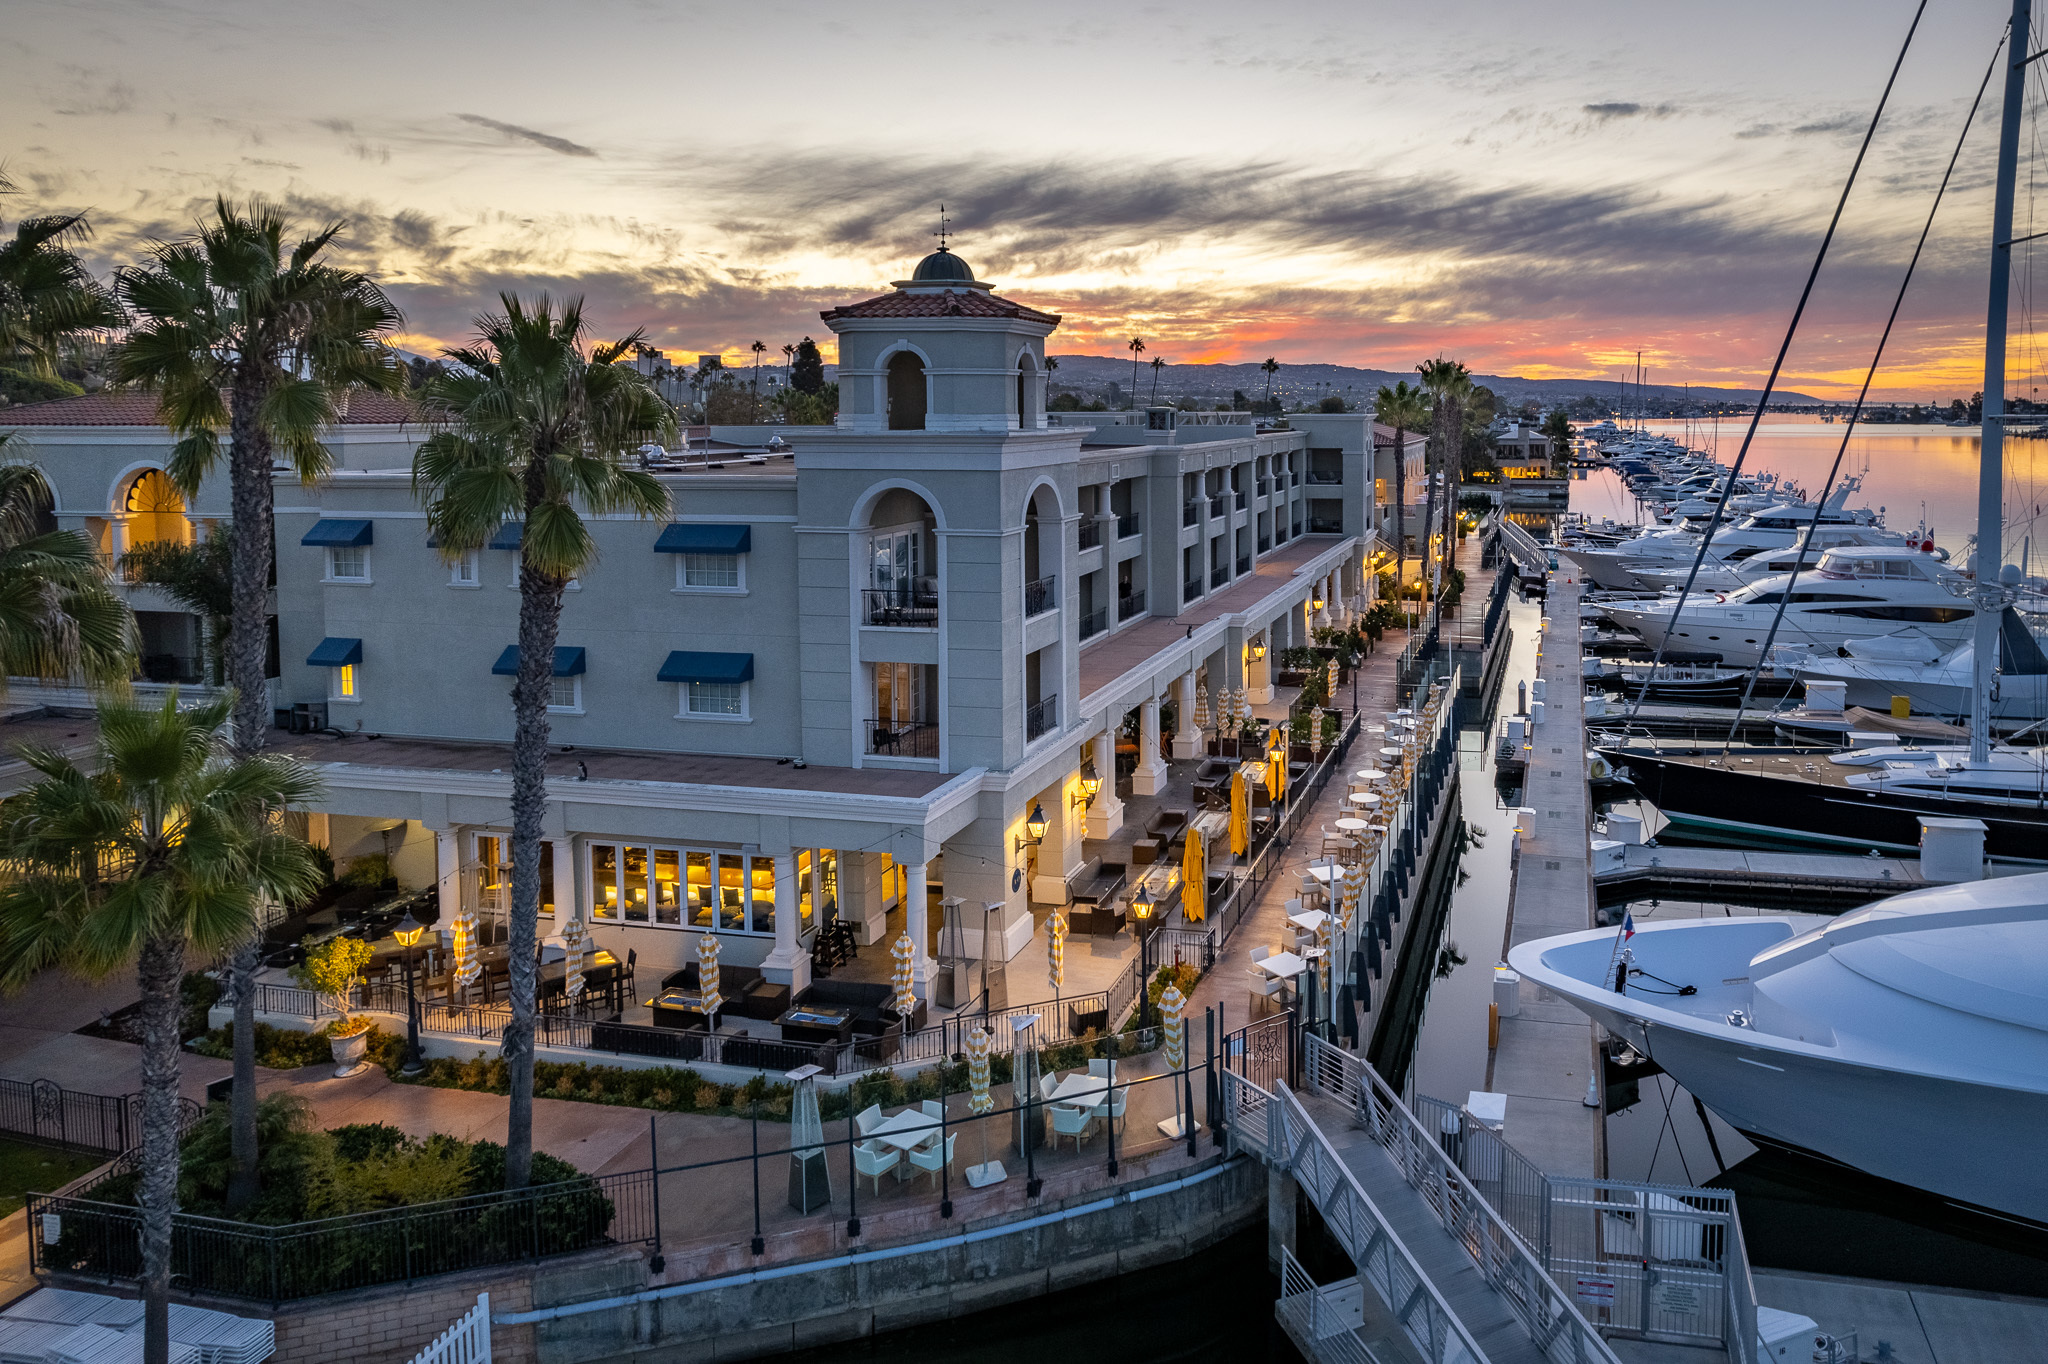 Photo of Balboa Bay Resort, Newport Beach, CA